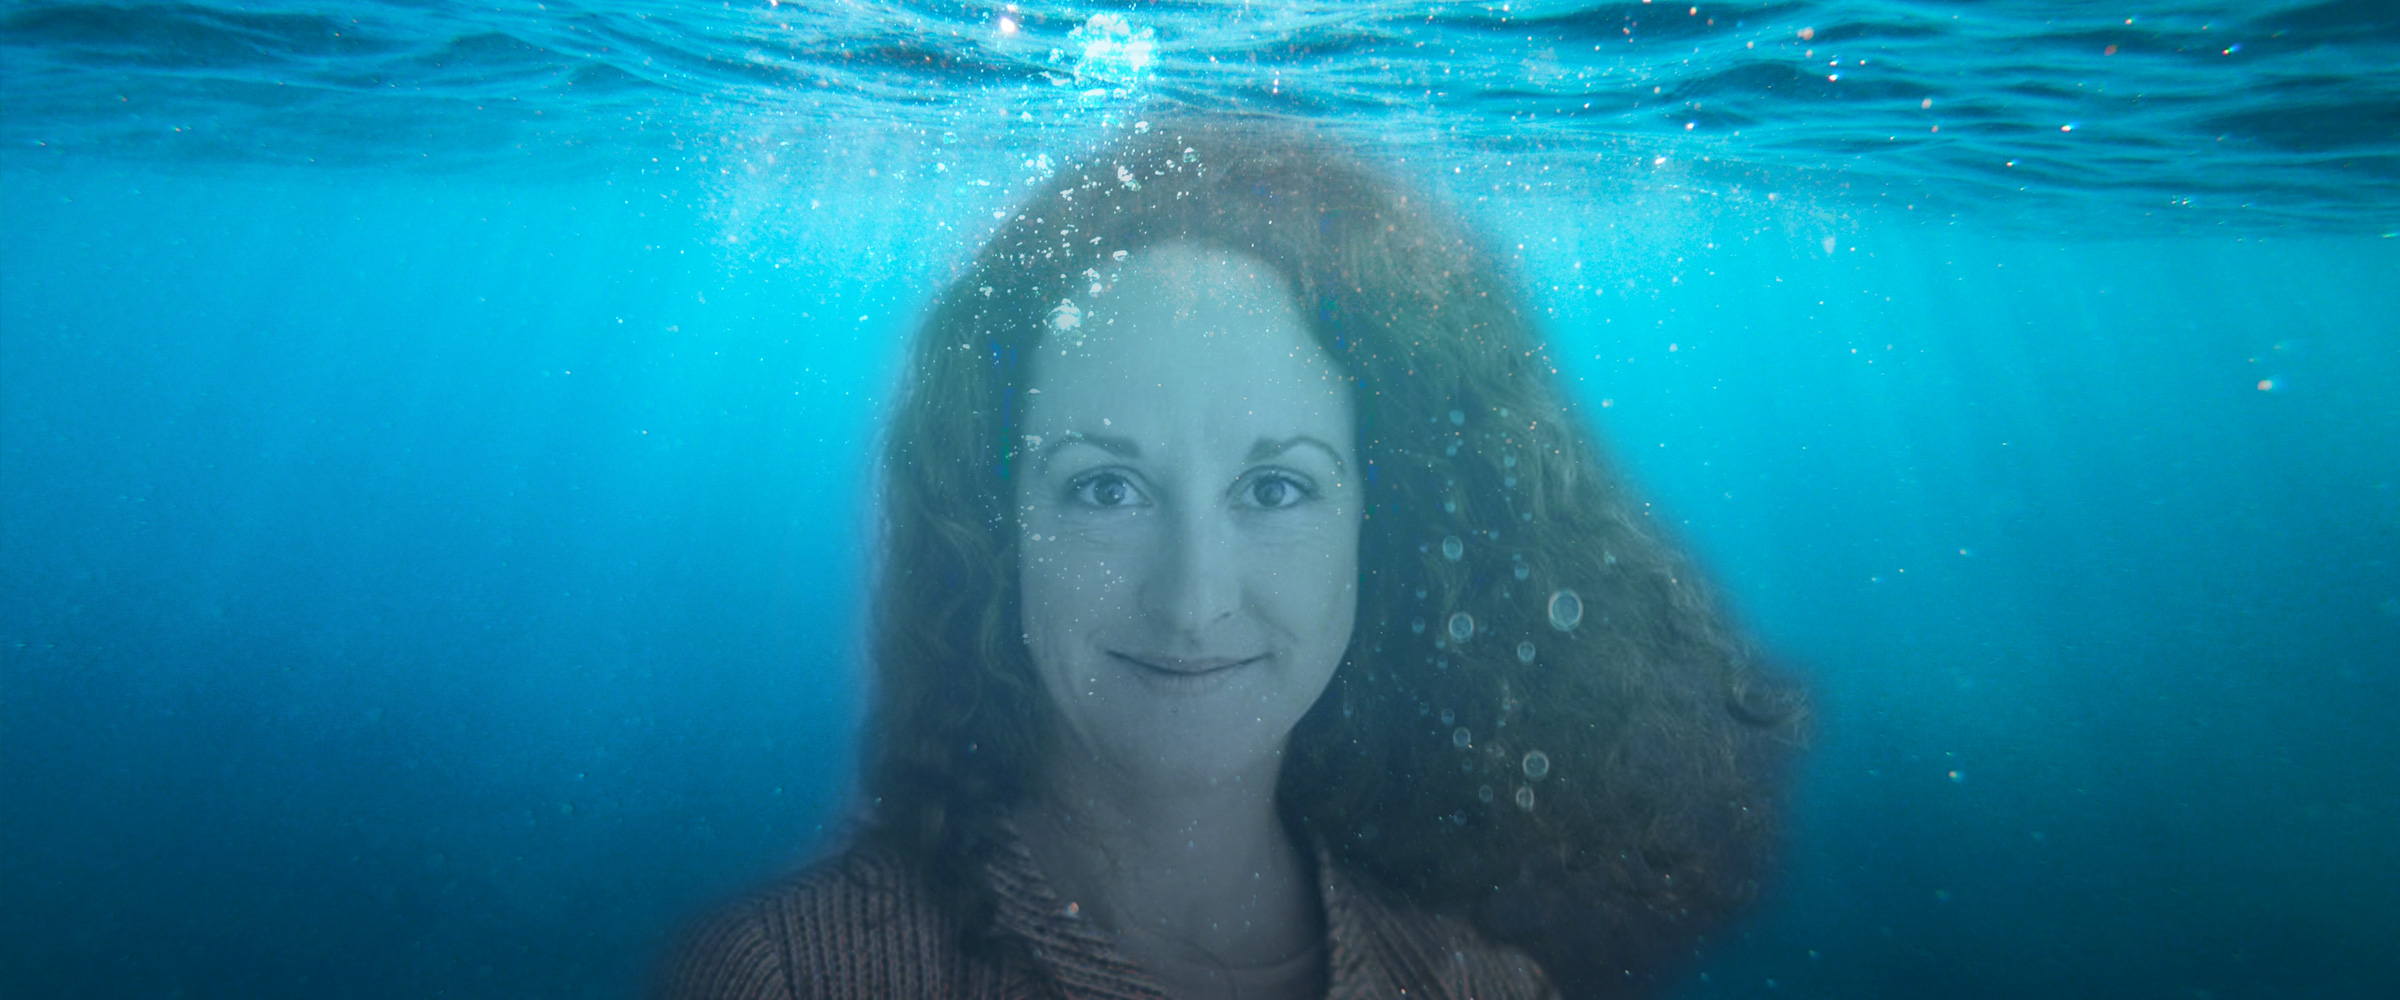 Frau unter Wasser - Bildmotiv zu "Einfach sagenhaft"